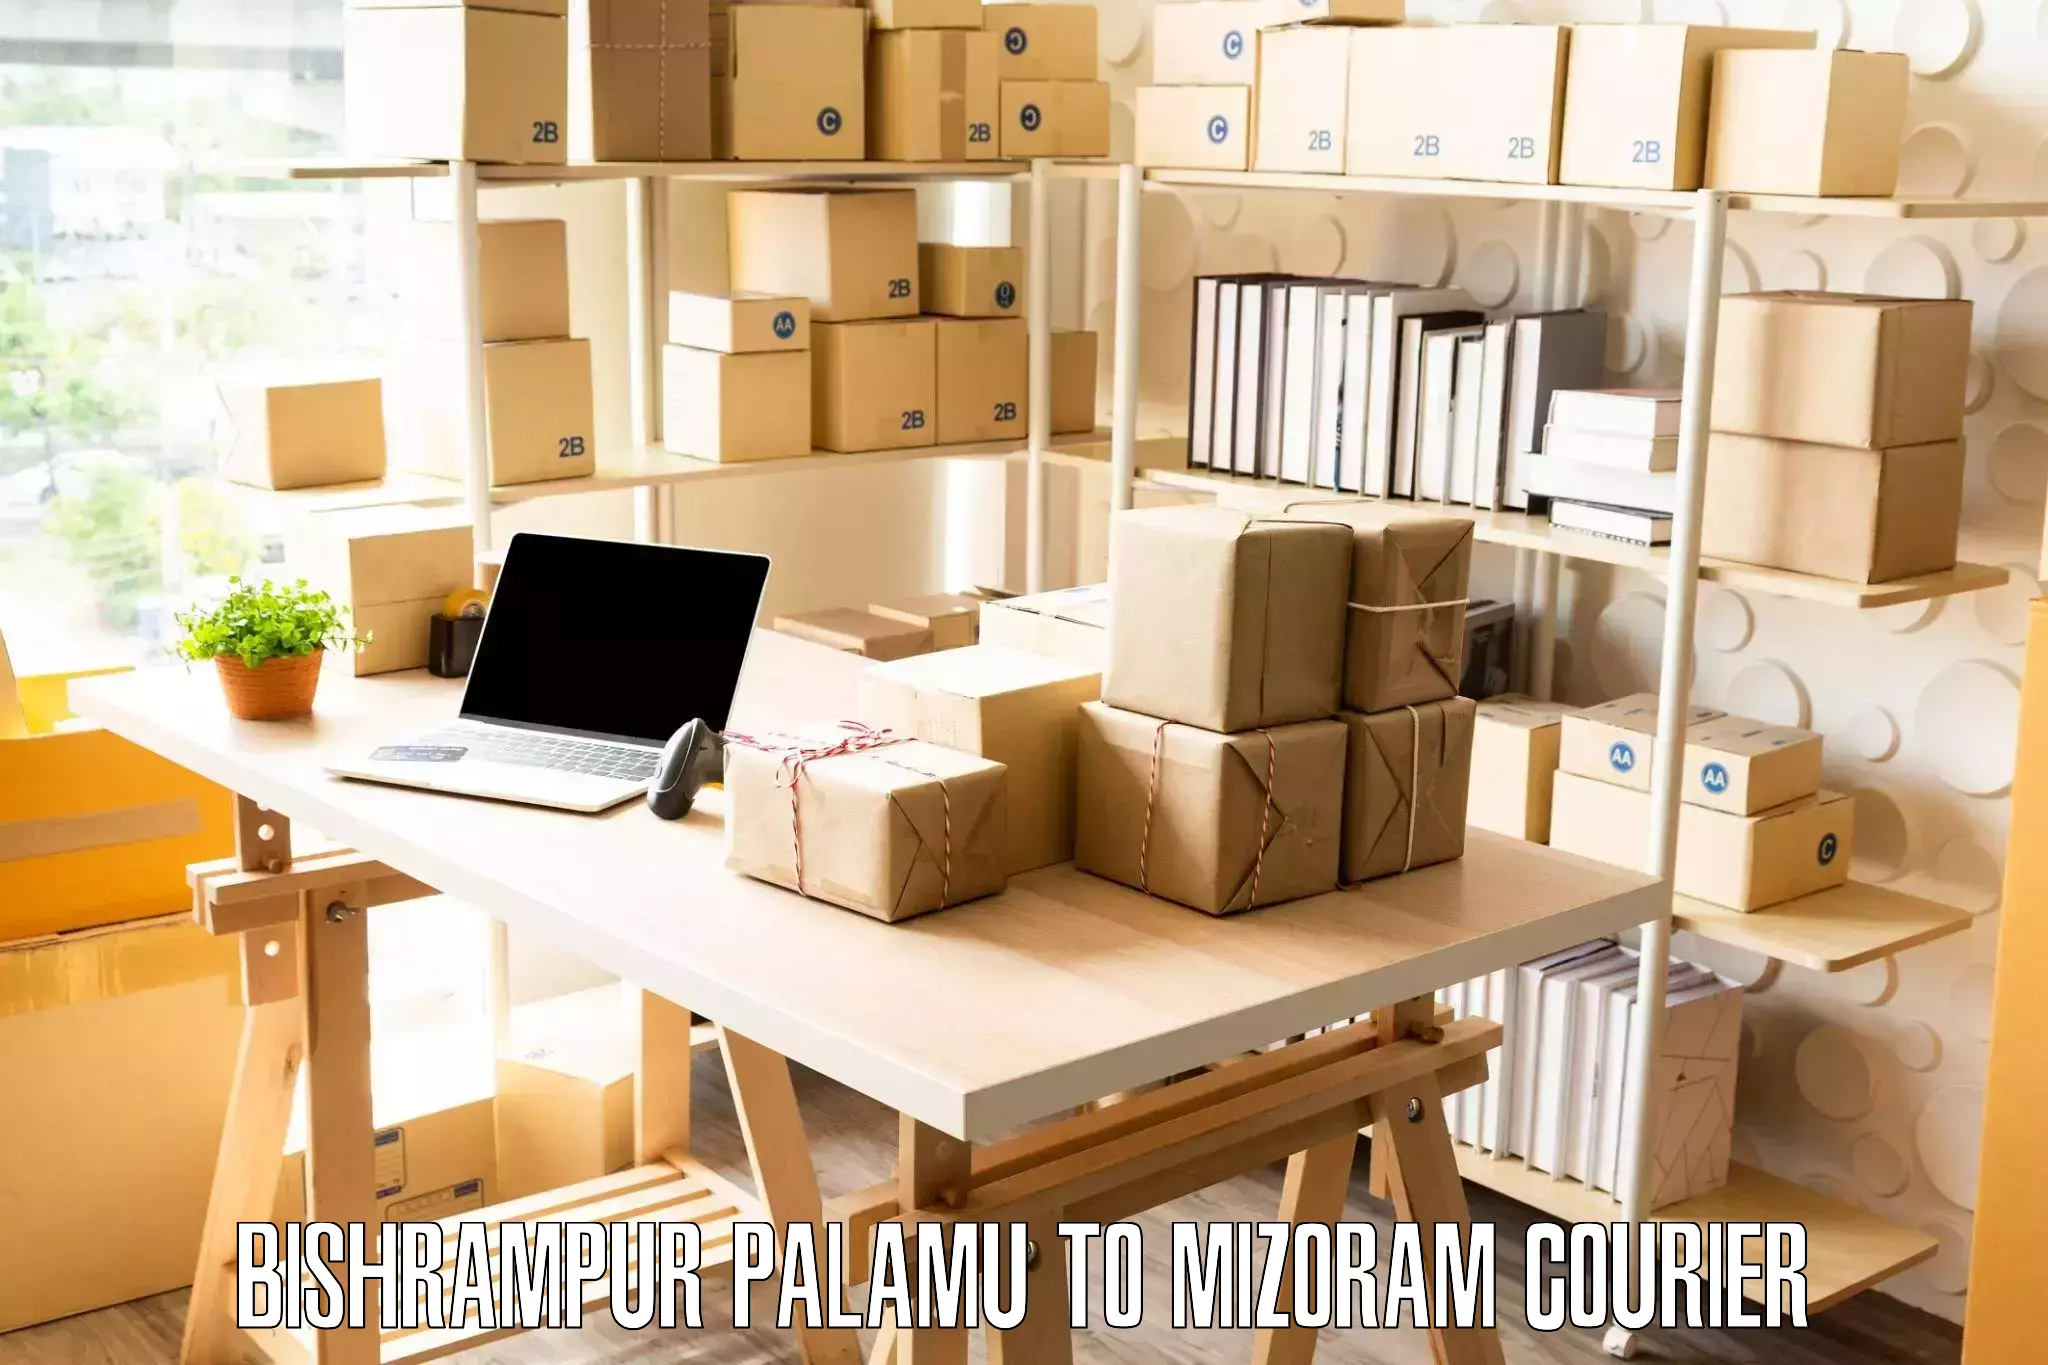 Furniture moving plans Bishrampur Palamu to Mizoram